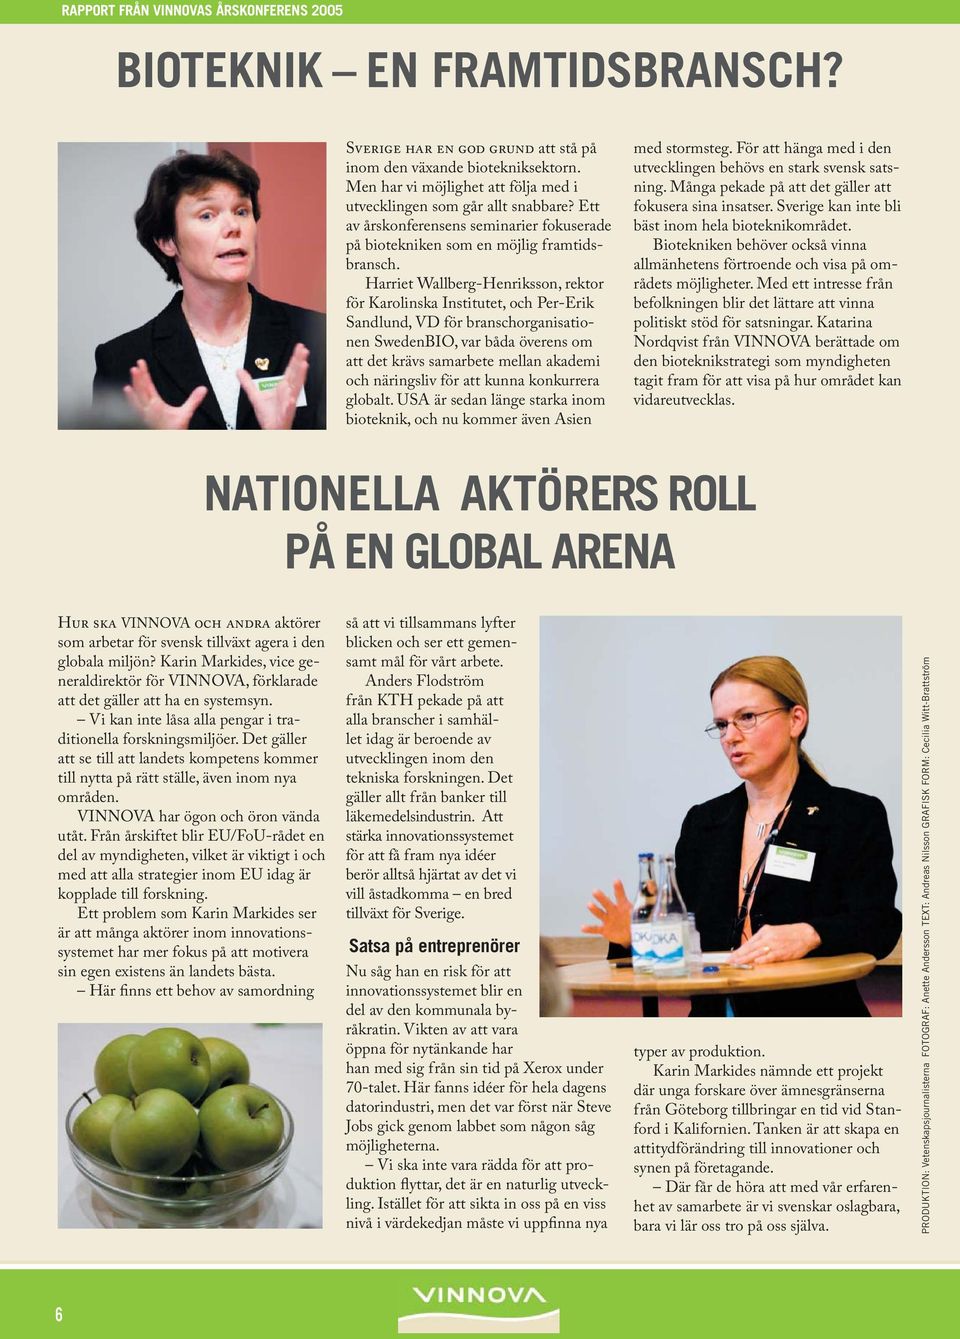 Harriet Wallberg-Henriksson, rektor för Karolinska Institutet, och Per-Erik Sandlund, VD för branschorganisationen SwedenBIO, var båda överens om att det krävs samarbete mellan akademi och näringsliv